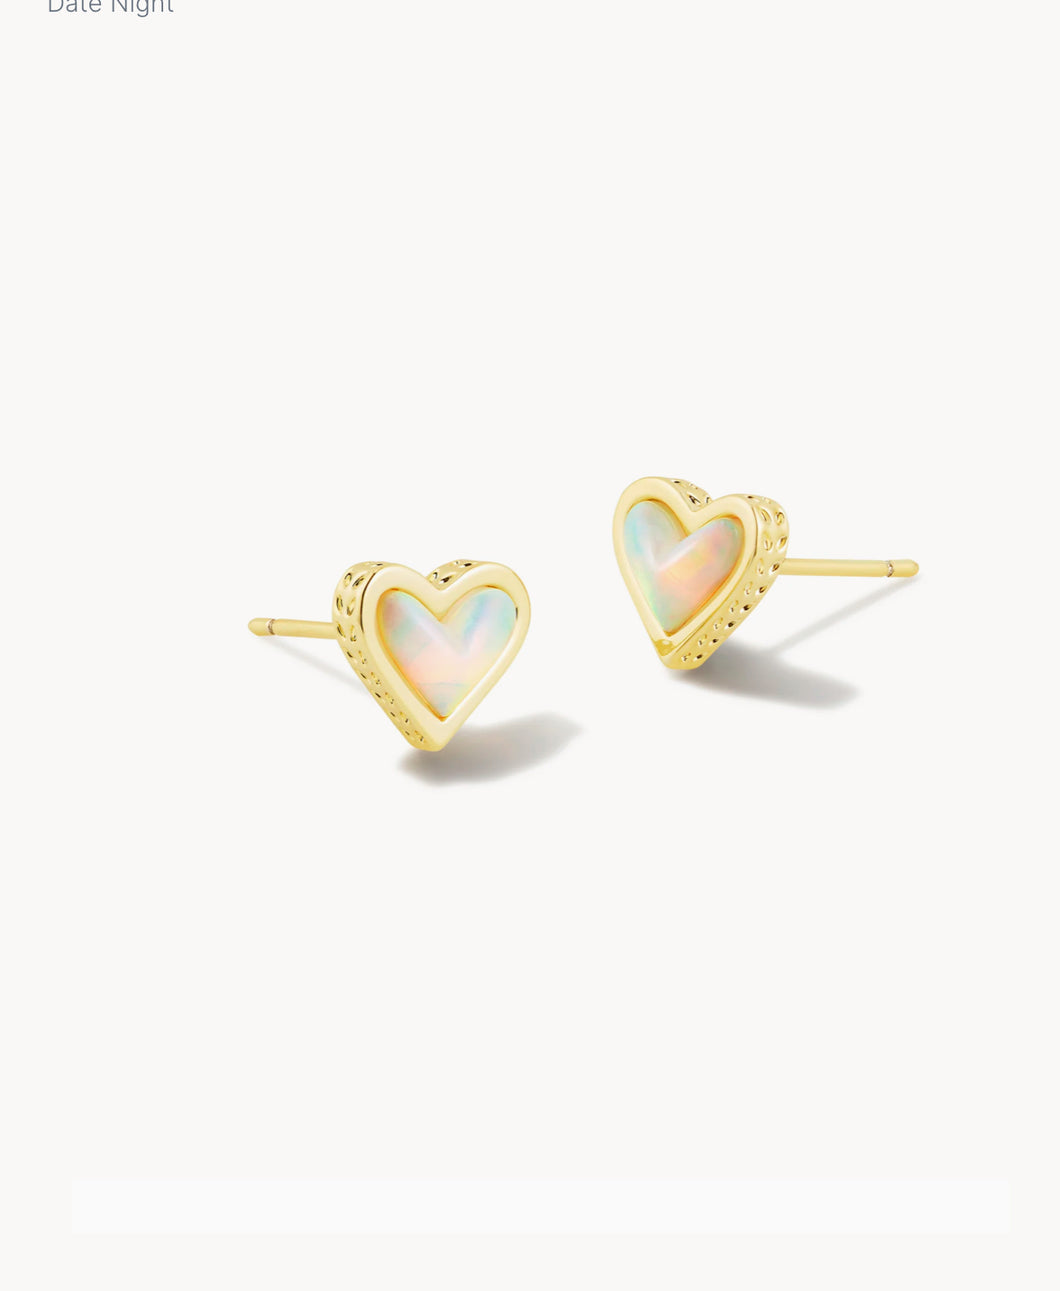 Framed Ari Heart Stud Earring Gold White Opalescent